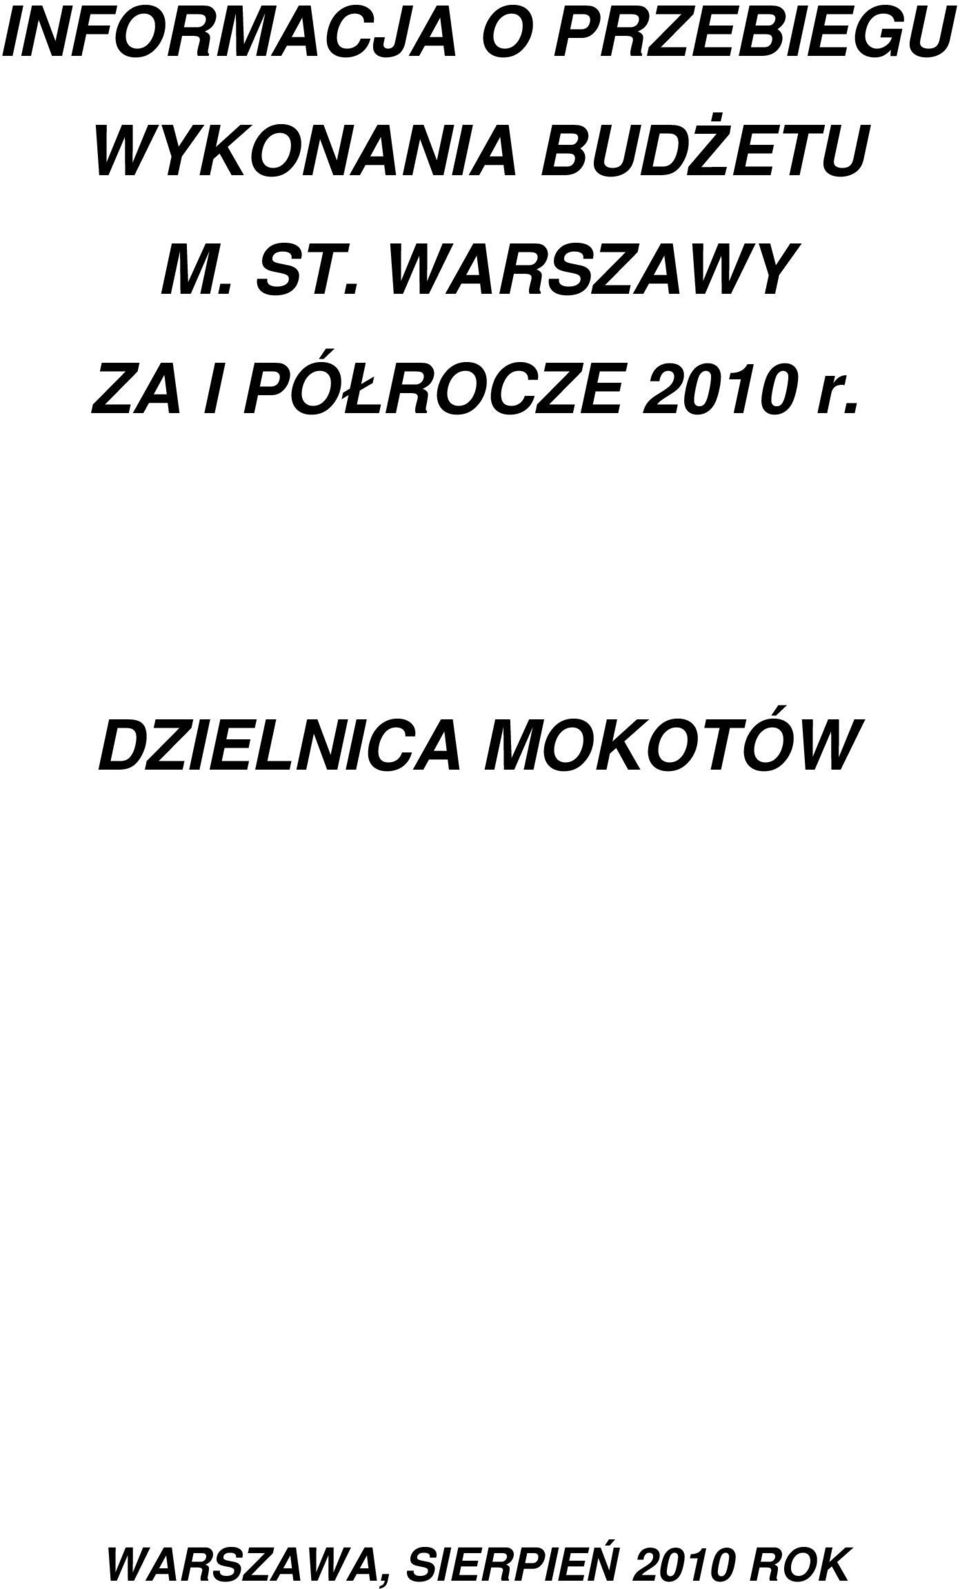 WARSZAWY ZA I PÓŁROCZE 2010 r.